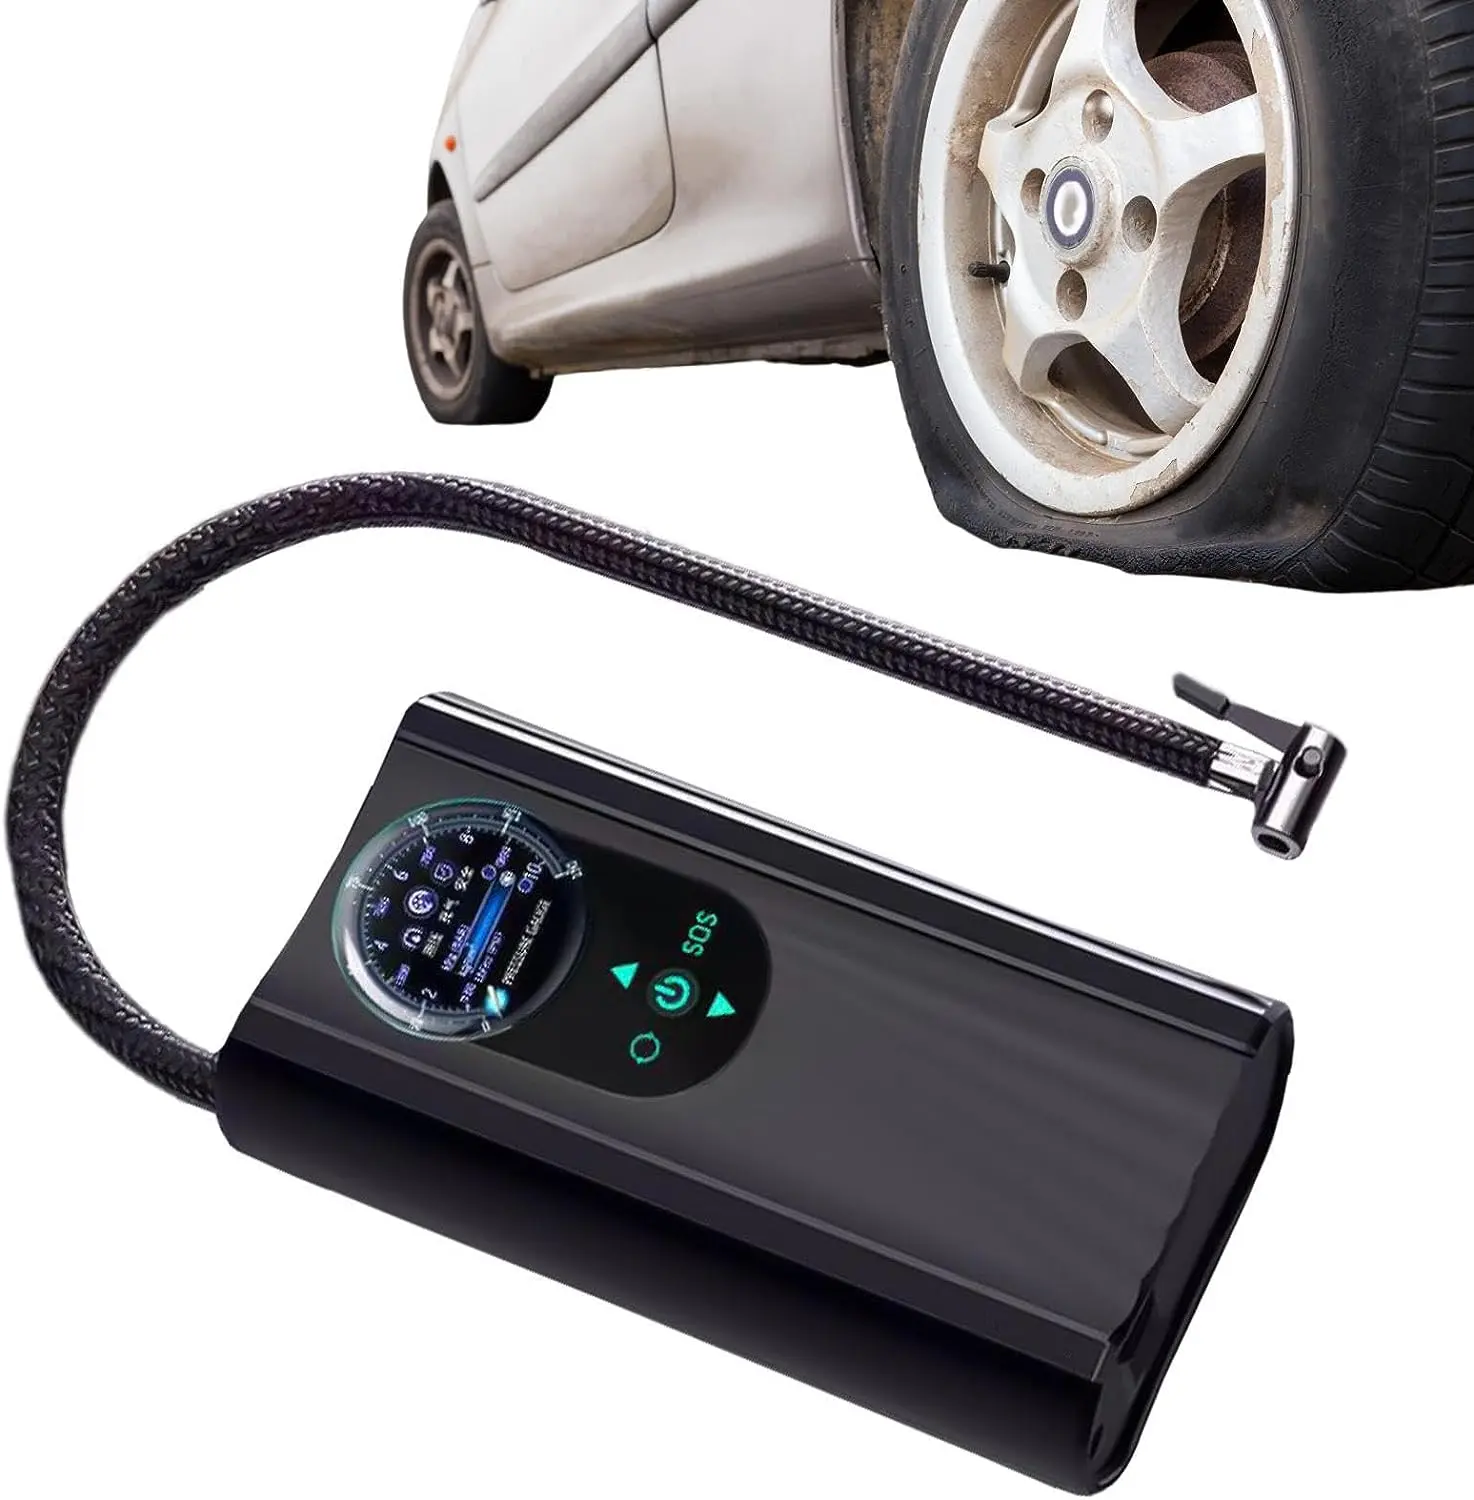 Bon prix voiture compresseur d'air 12V 150PSI pompe à air pneu automatique Portable gonfleur de pneu pour voiture électrique voiture numérique pneu Inflat